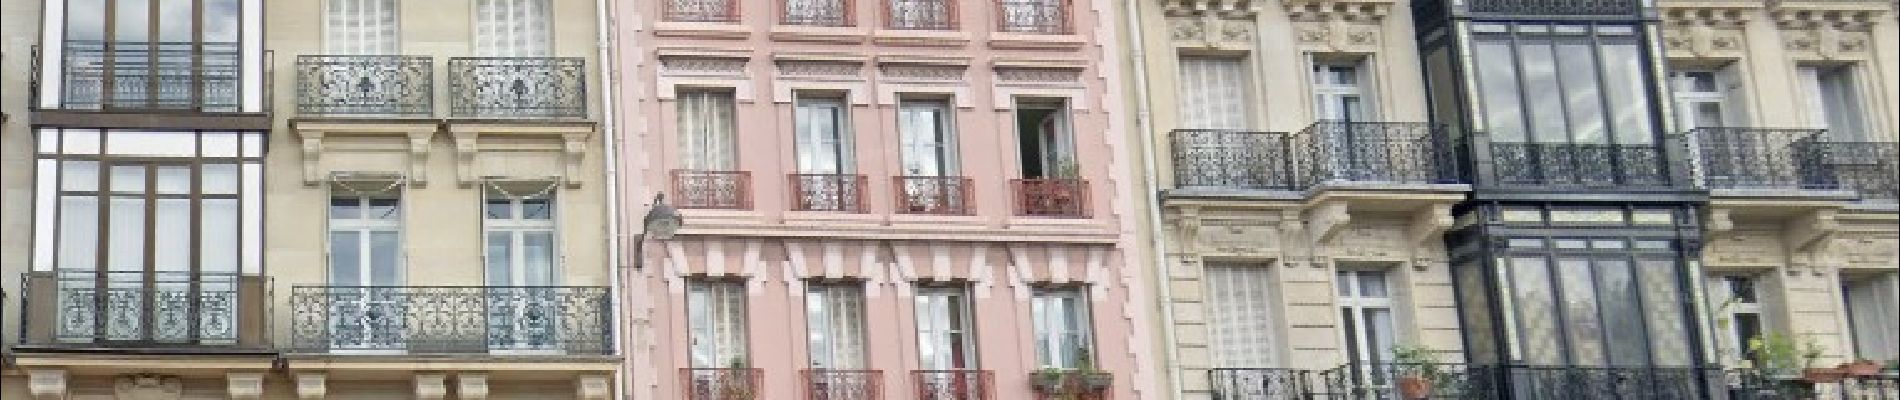 POI Paris - un des rares immeubles roses de Paris - Photo